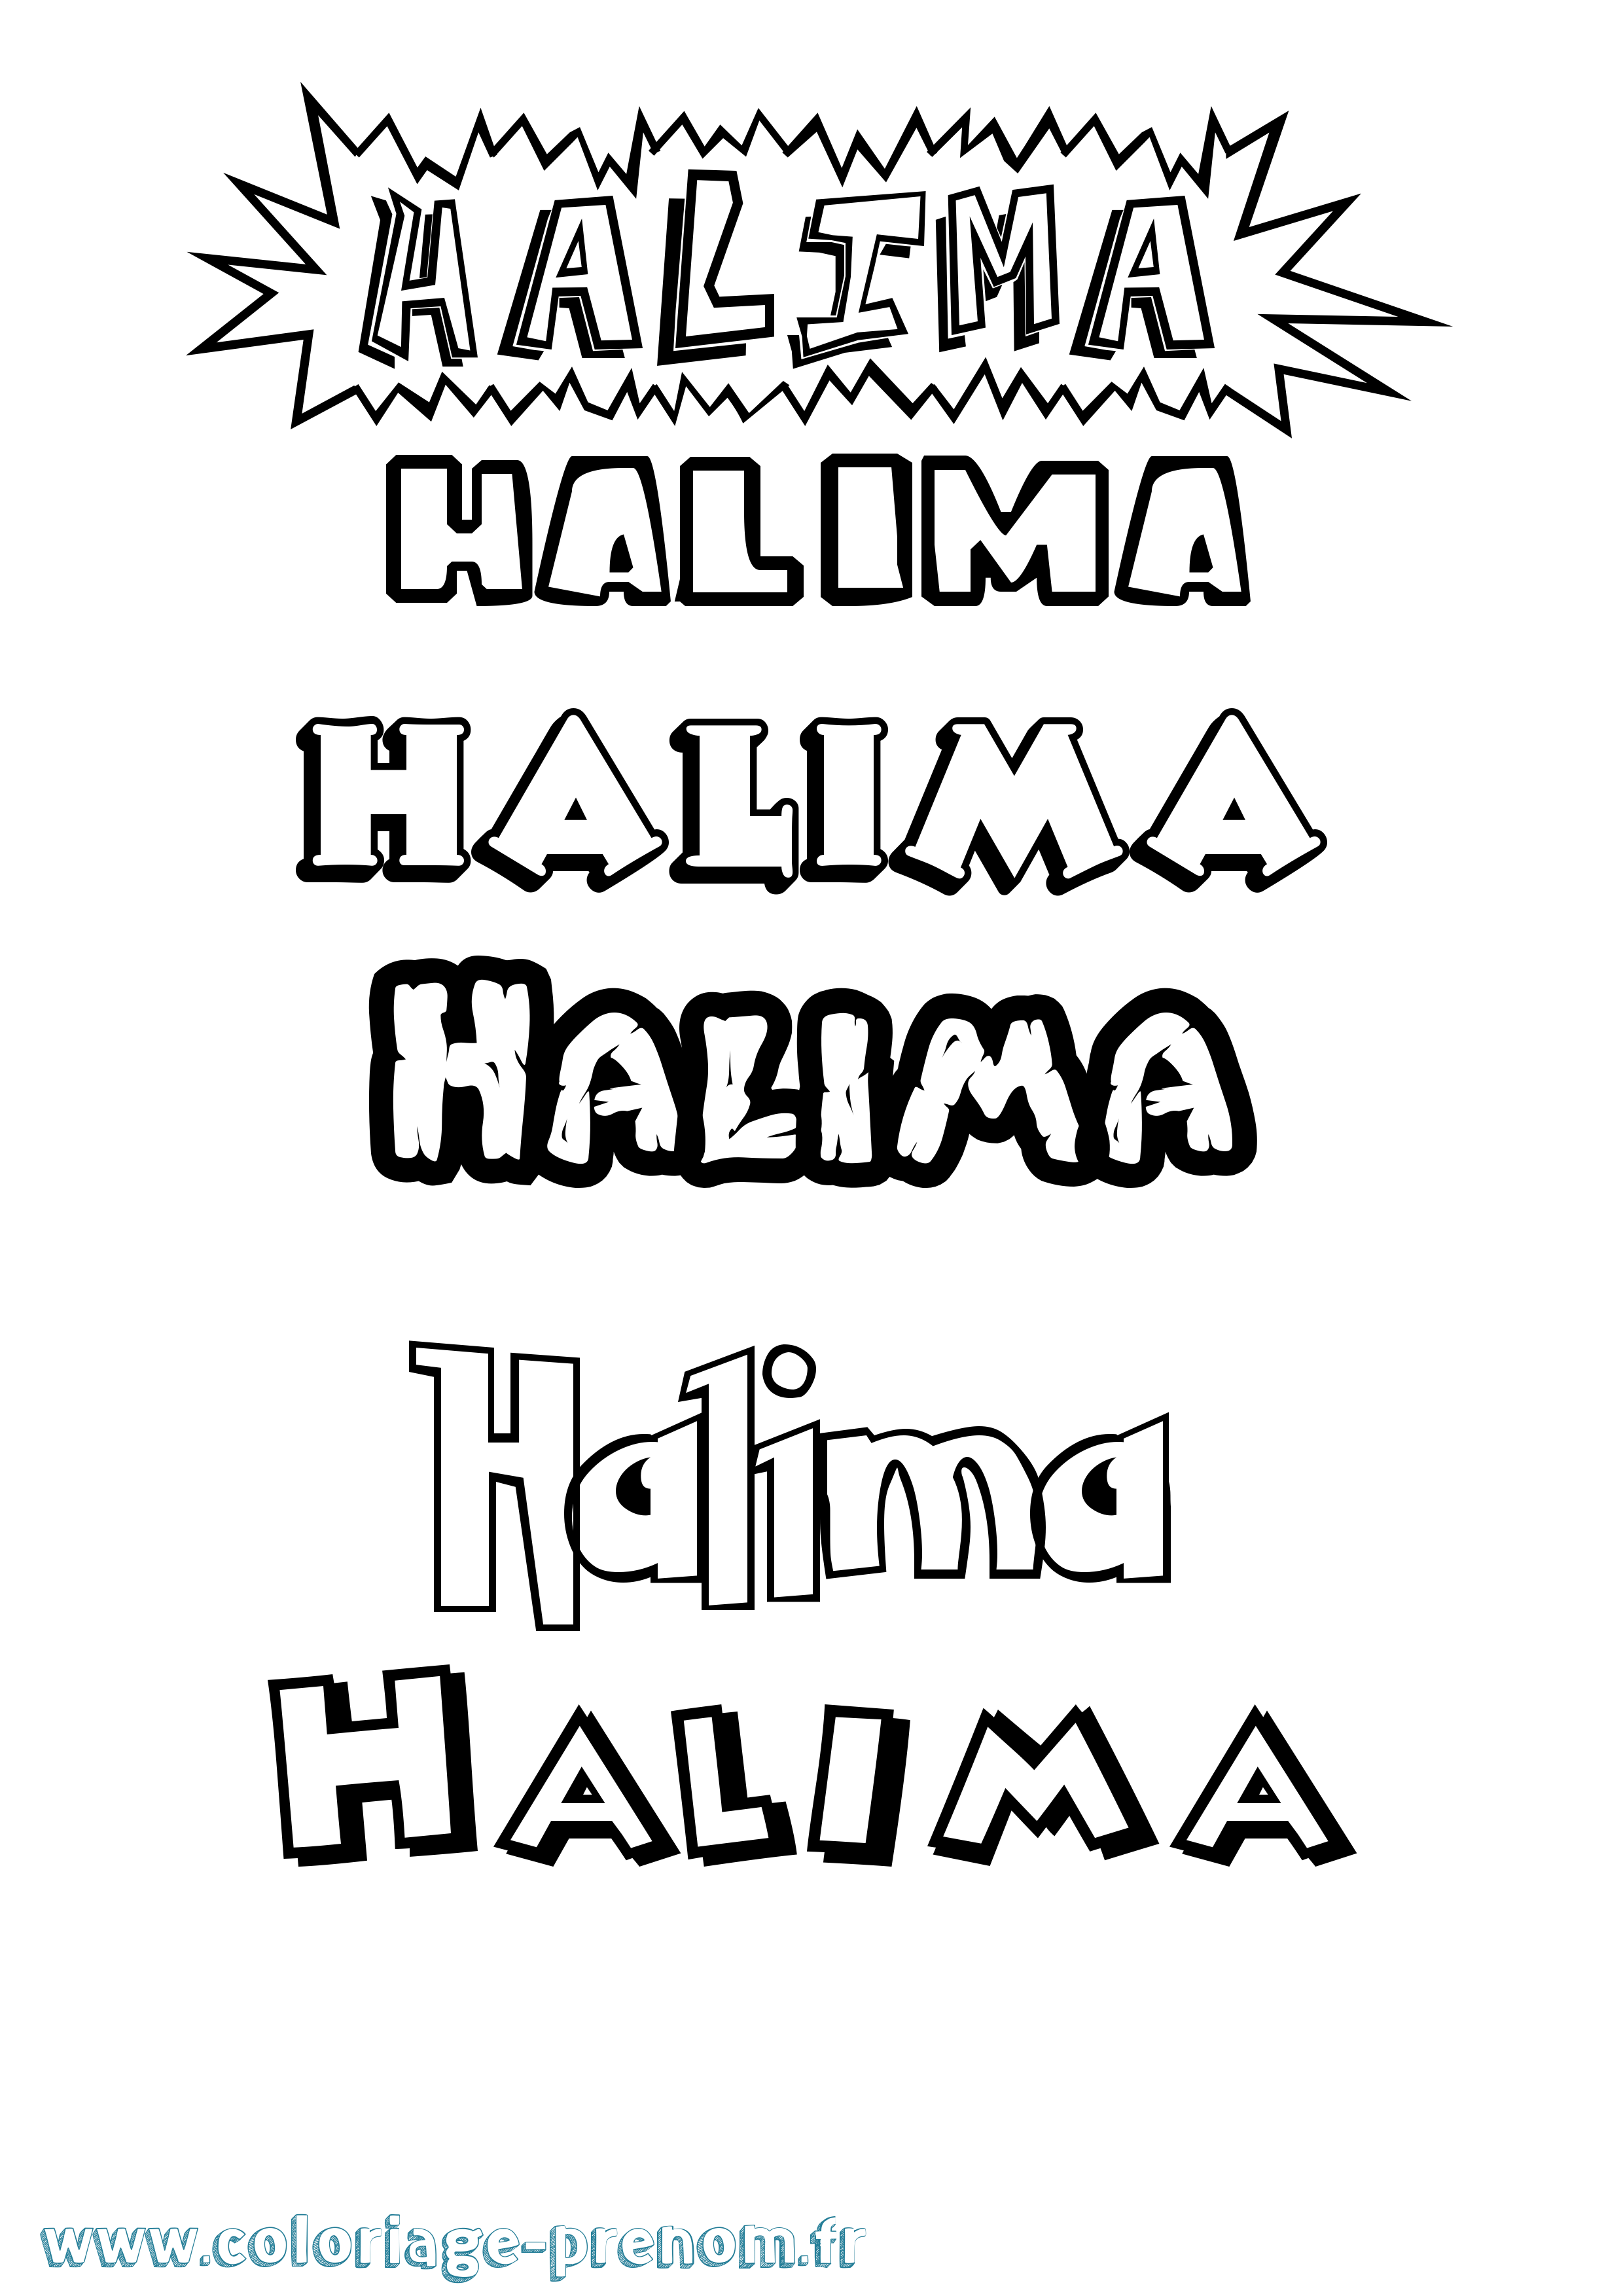 Coloriage prénom Halima Dessin Animé